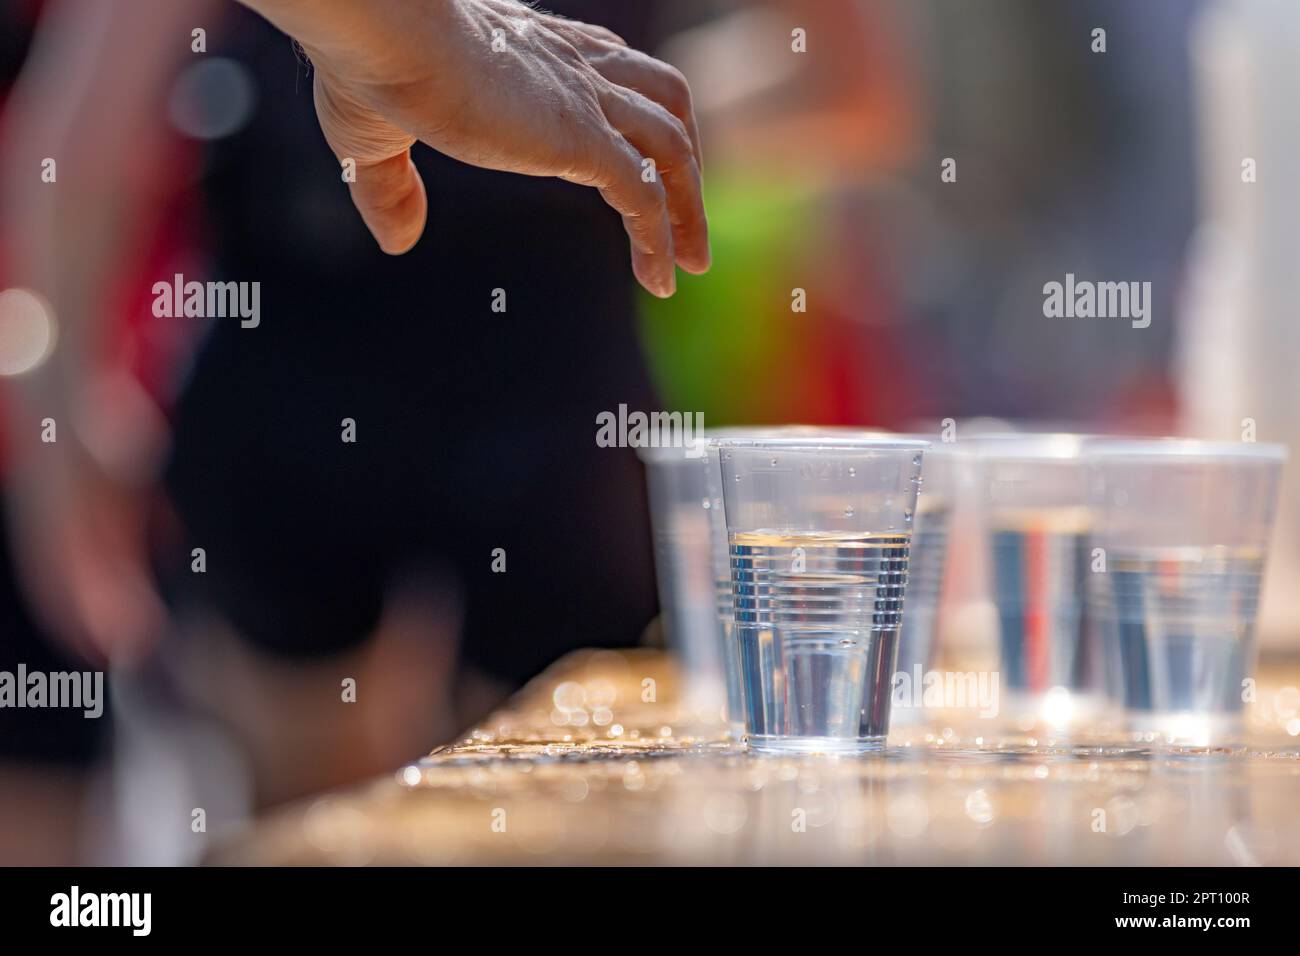 la mano de un corredor de maratón alcanza para la taza de plástico con agua Foto de stock